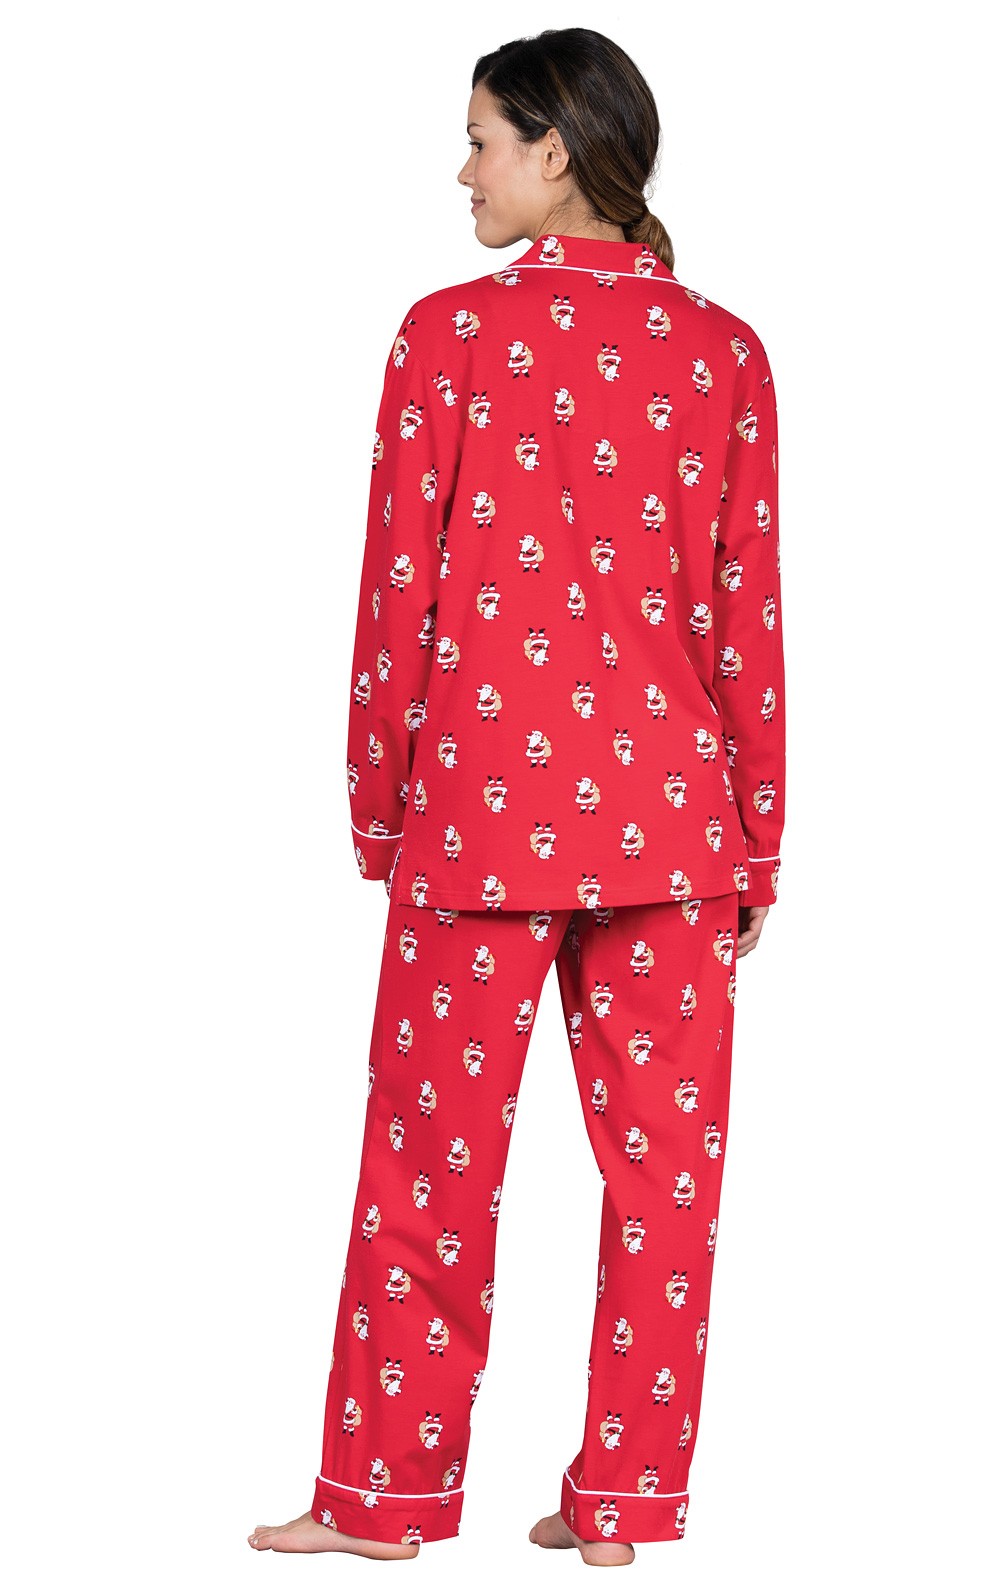 St. Nick Boyfriend Pajamas in Women's Cotton Pajamas | Pajamas for ...